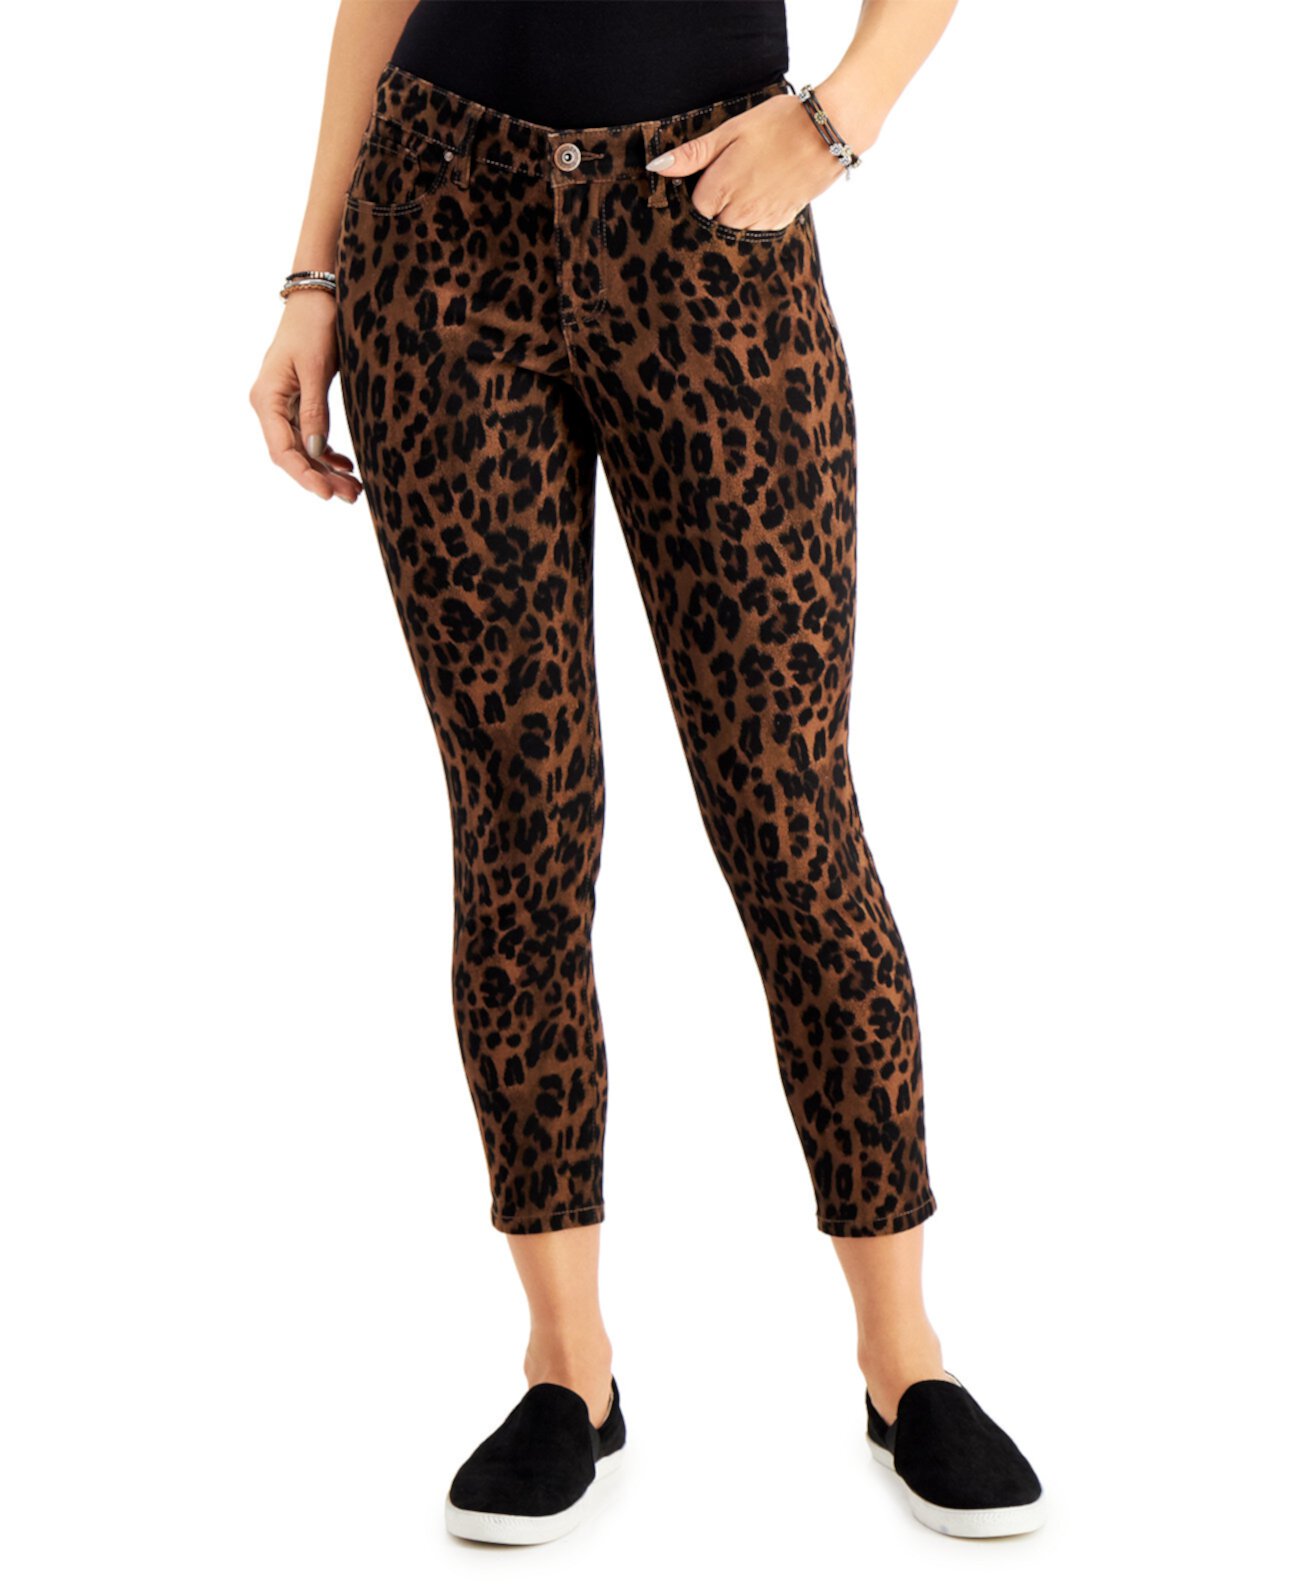 Пышные джинсы скинни большого размера с животным принтом, созданные для Macy's Style & Co